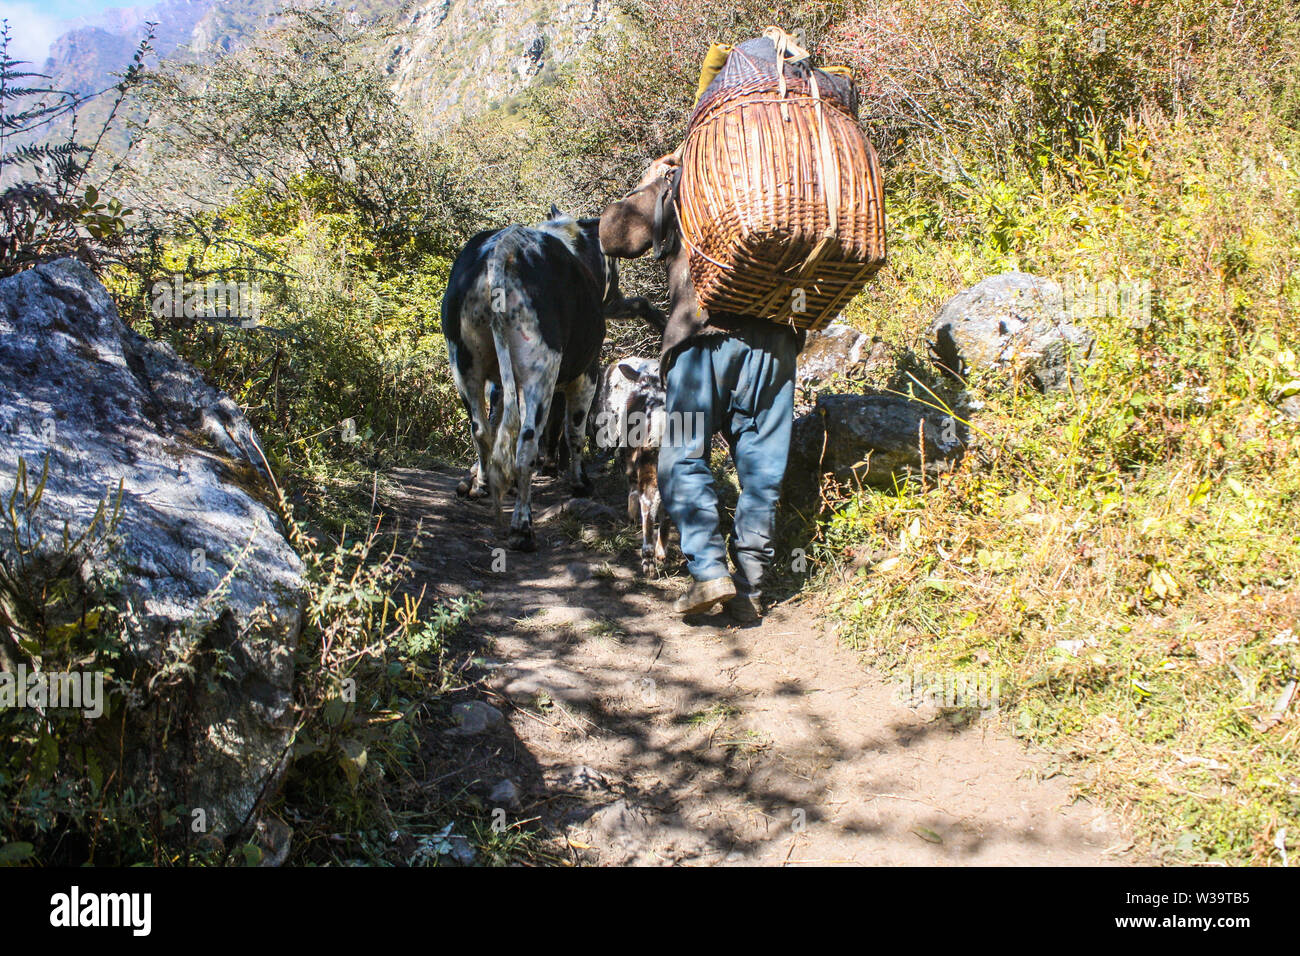 Los estilos de vida en la región del Himalaya, Nepal. La gente local que transportaban mercancías en su espalda. Transportar cosas de pueblo en pueblo de montaña superior. Foto de stock